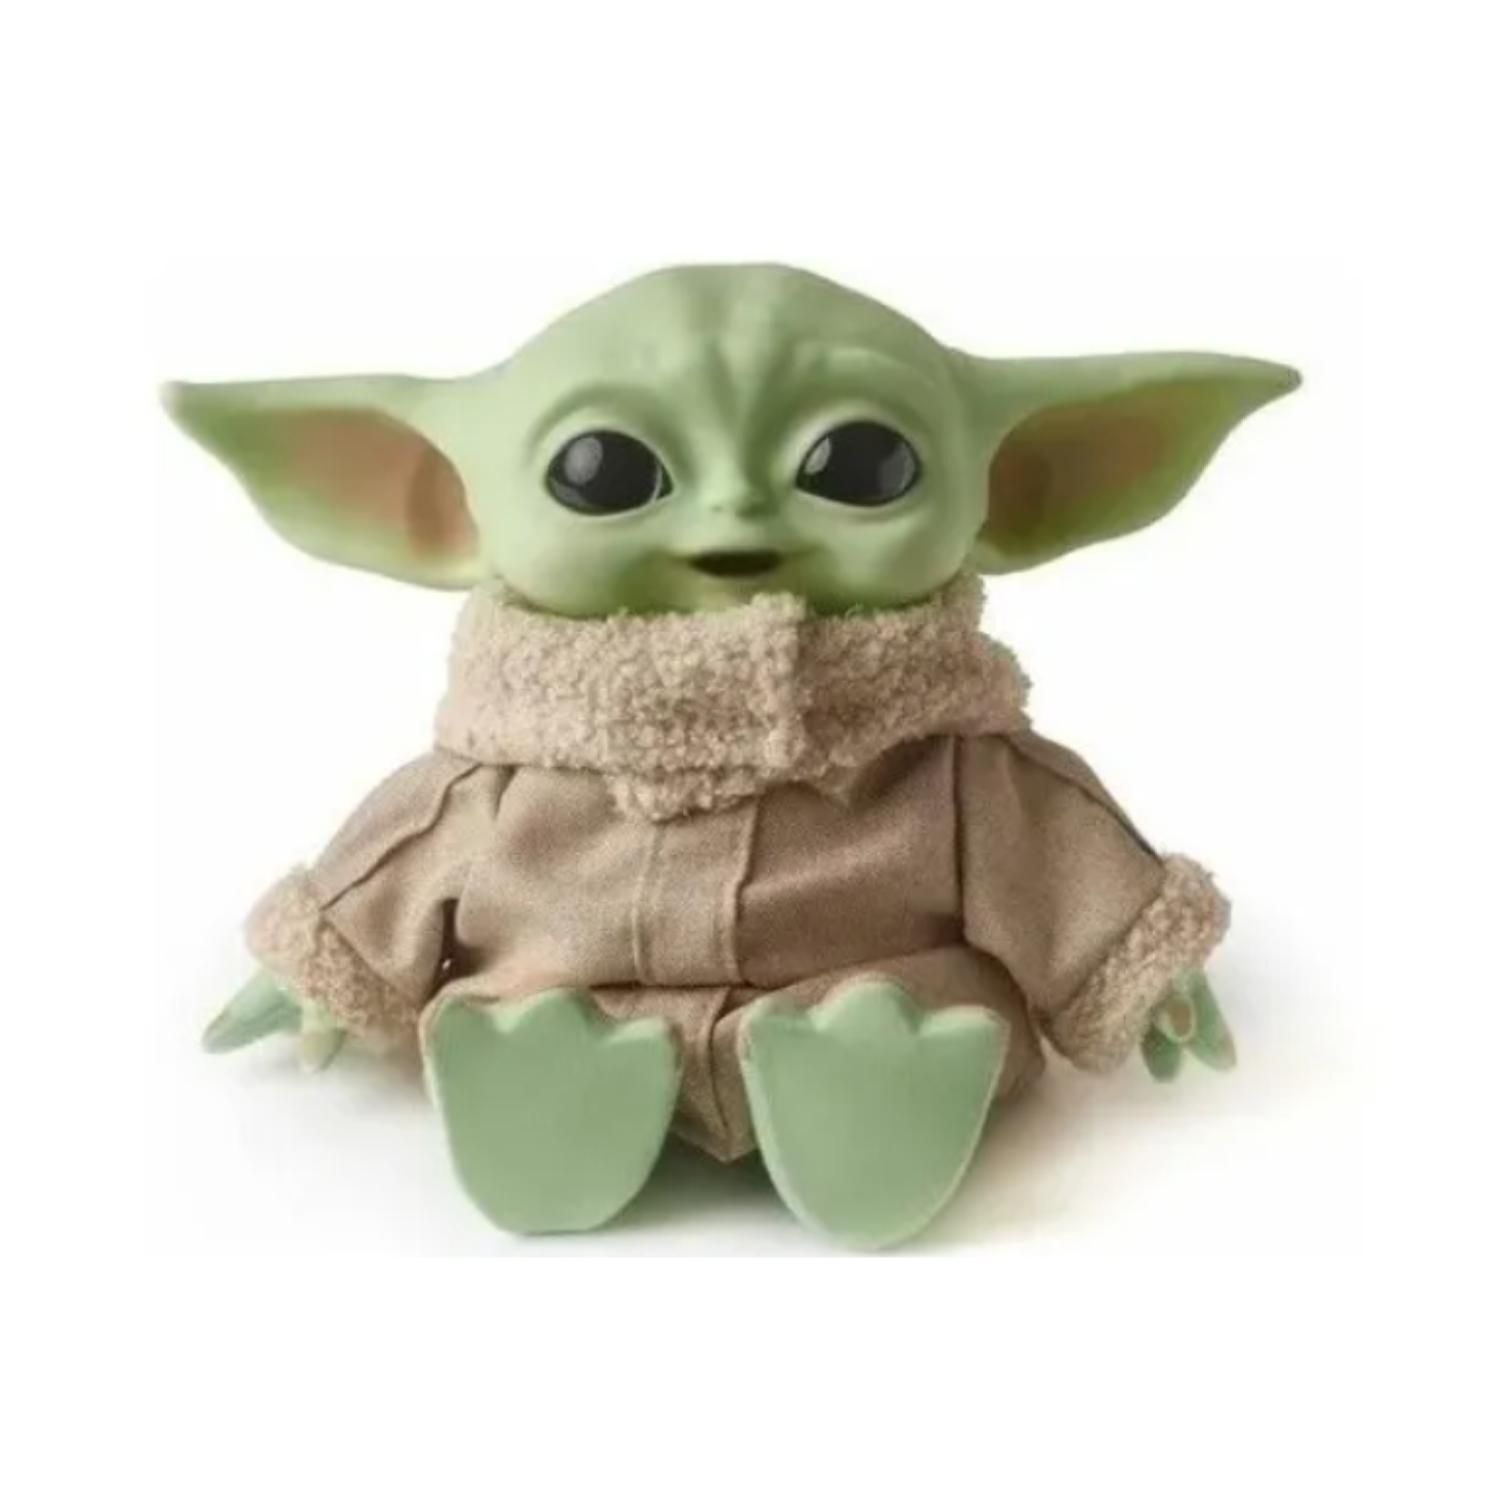 Star Wars - Peluche Bébé Yoda 28 cm